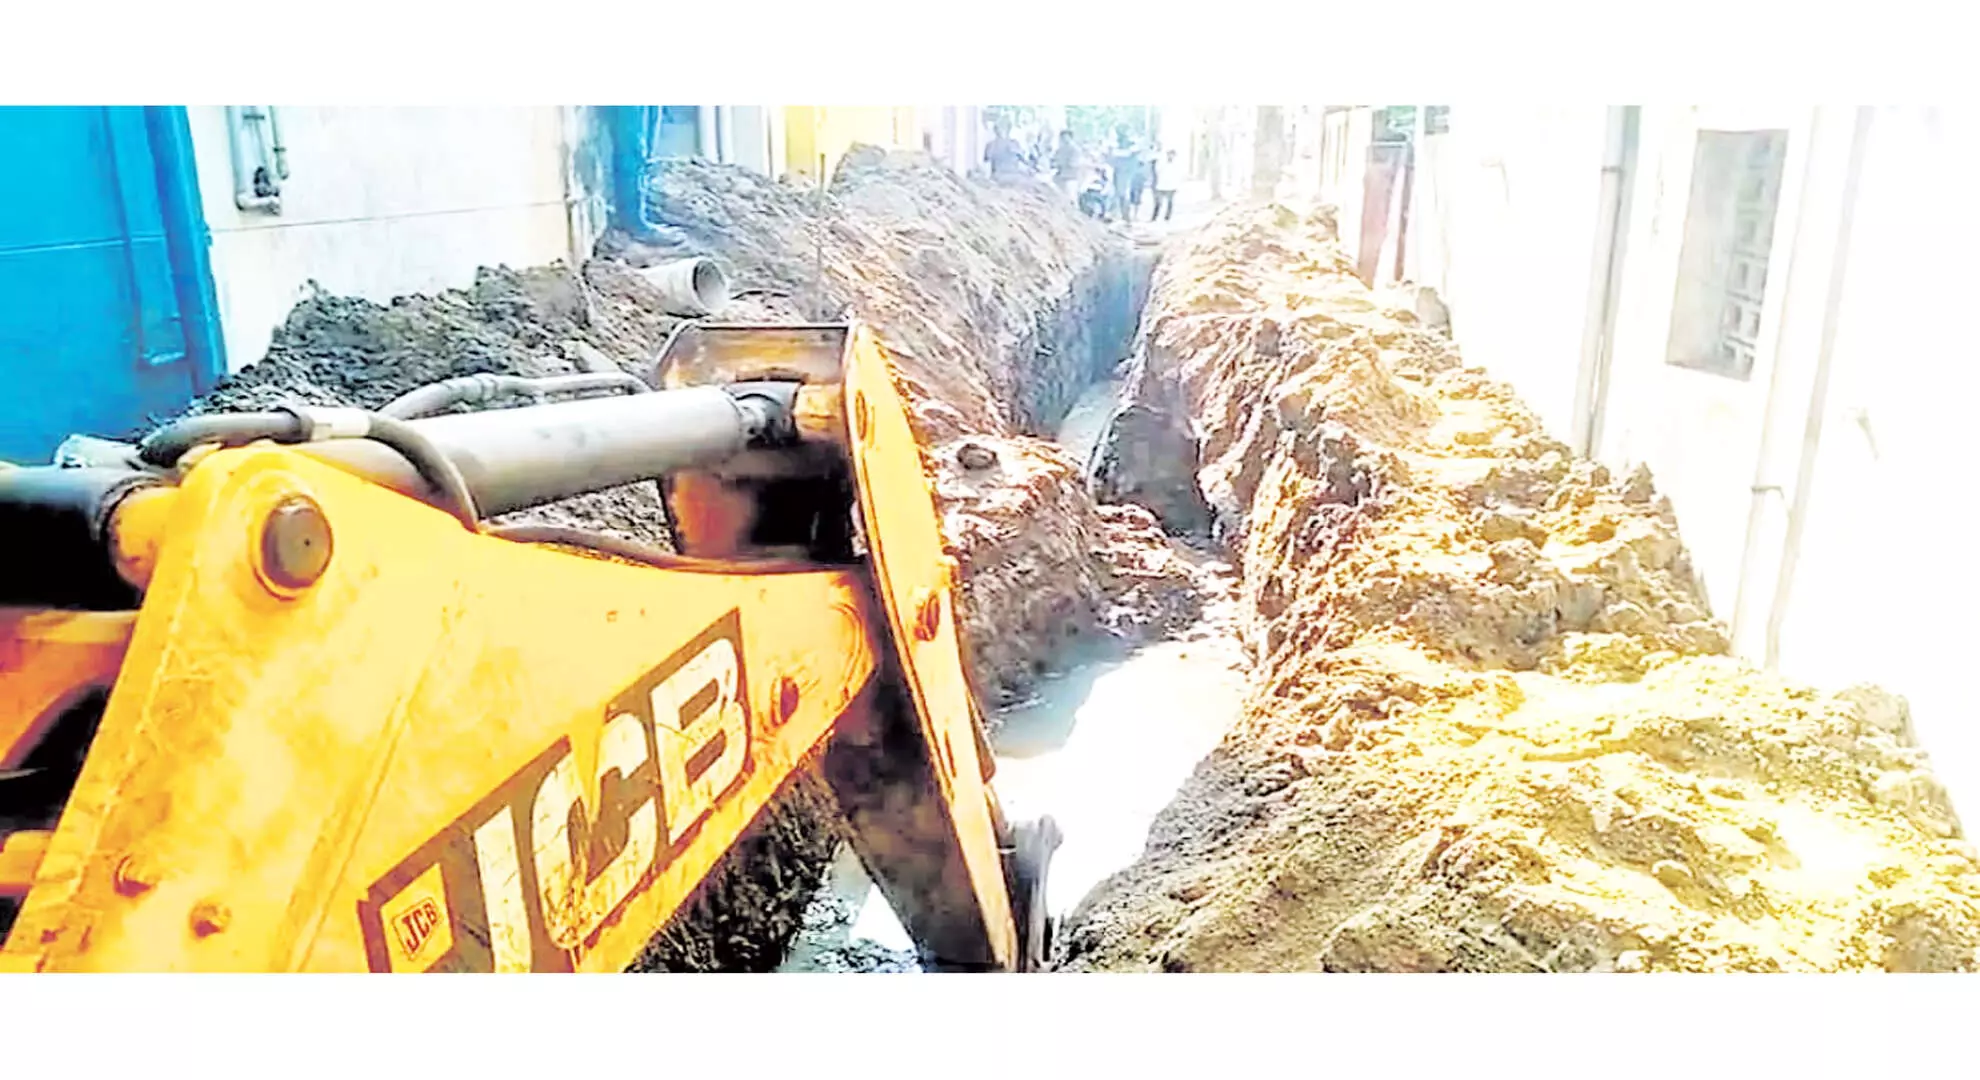 चेन्नई: मिट्टी धंसने से नाले में काम कर रहे 30 वर्षीय व्यक्ति की मौत